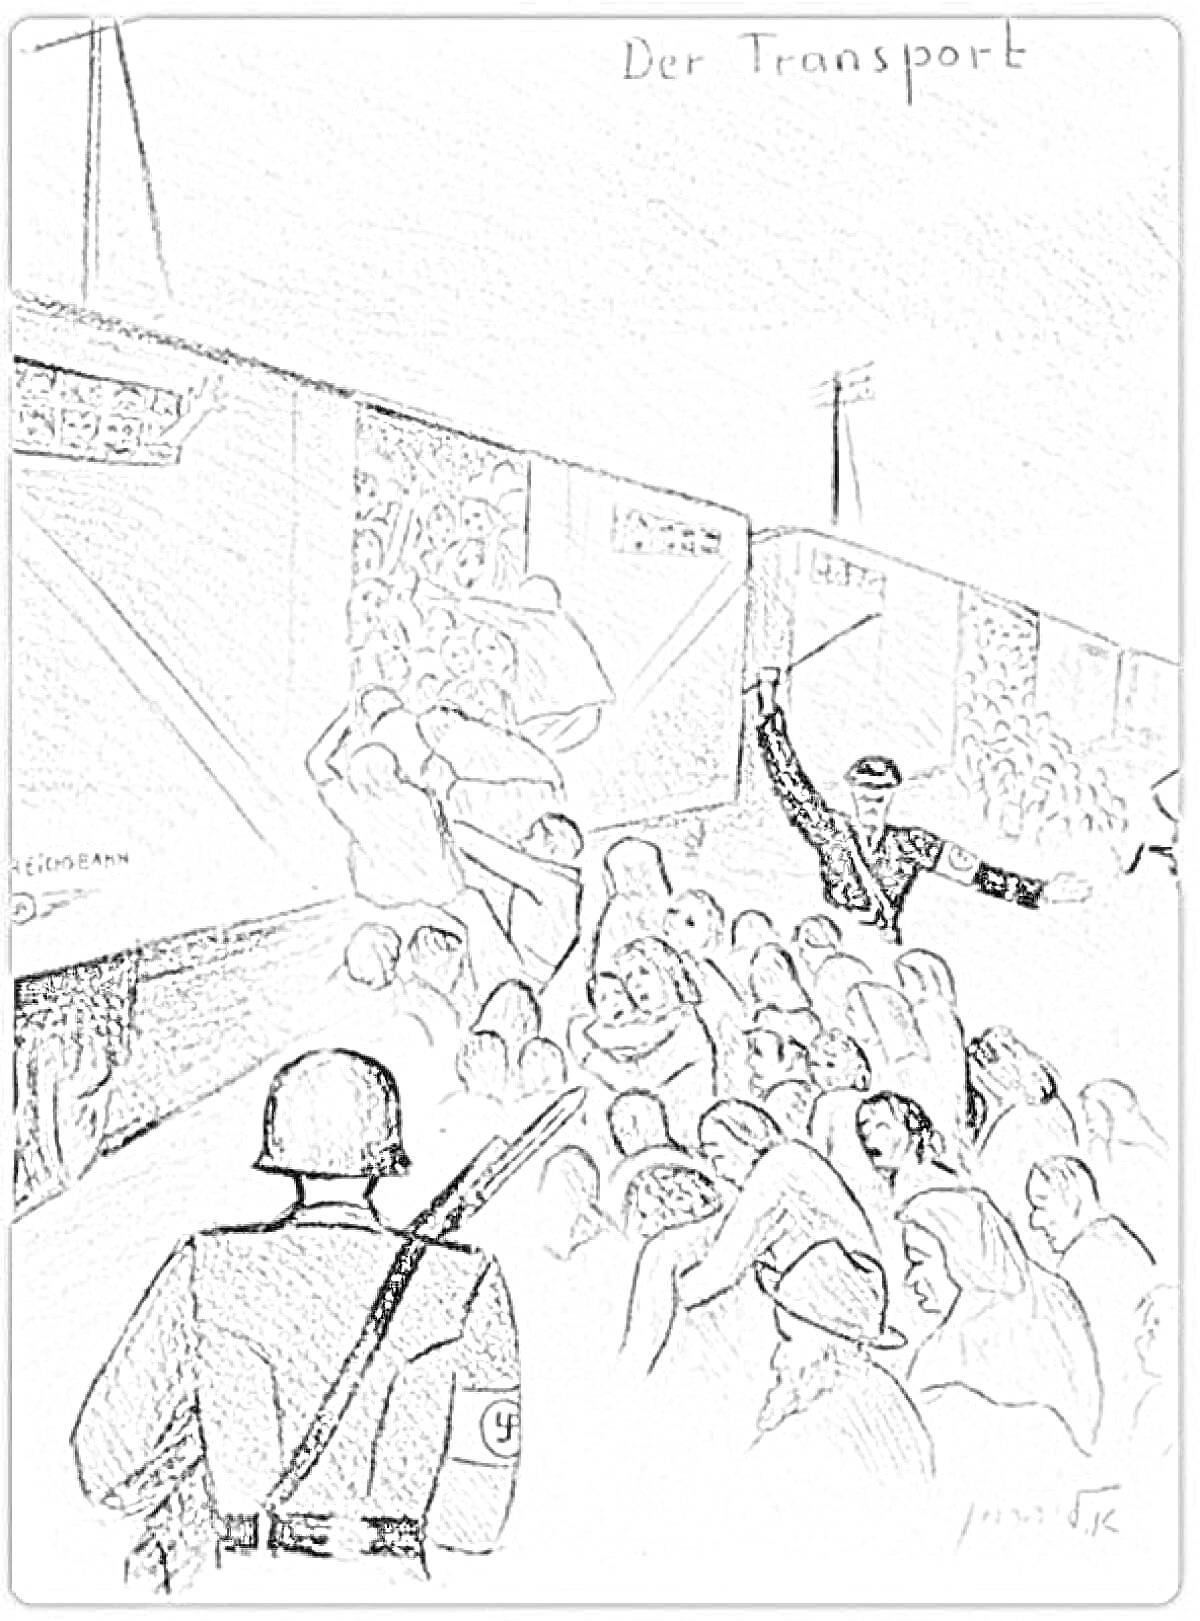 Транспортировка евреев в поезде, солдаты в касках с оружием, офицер с поднятой рукой, толпа людей возле вагонов, надпись 